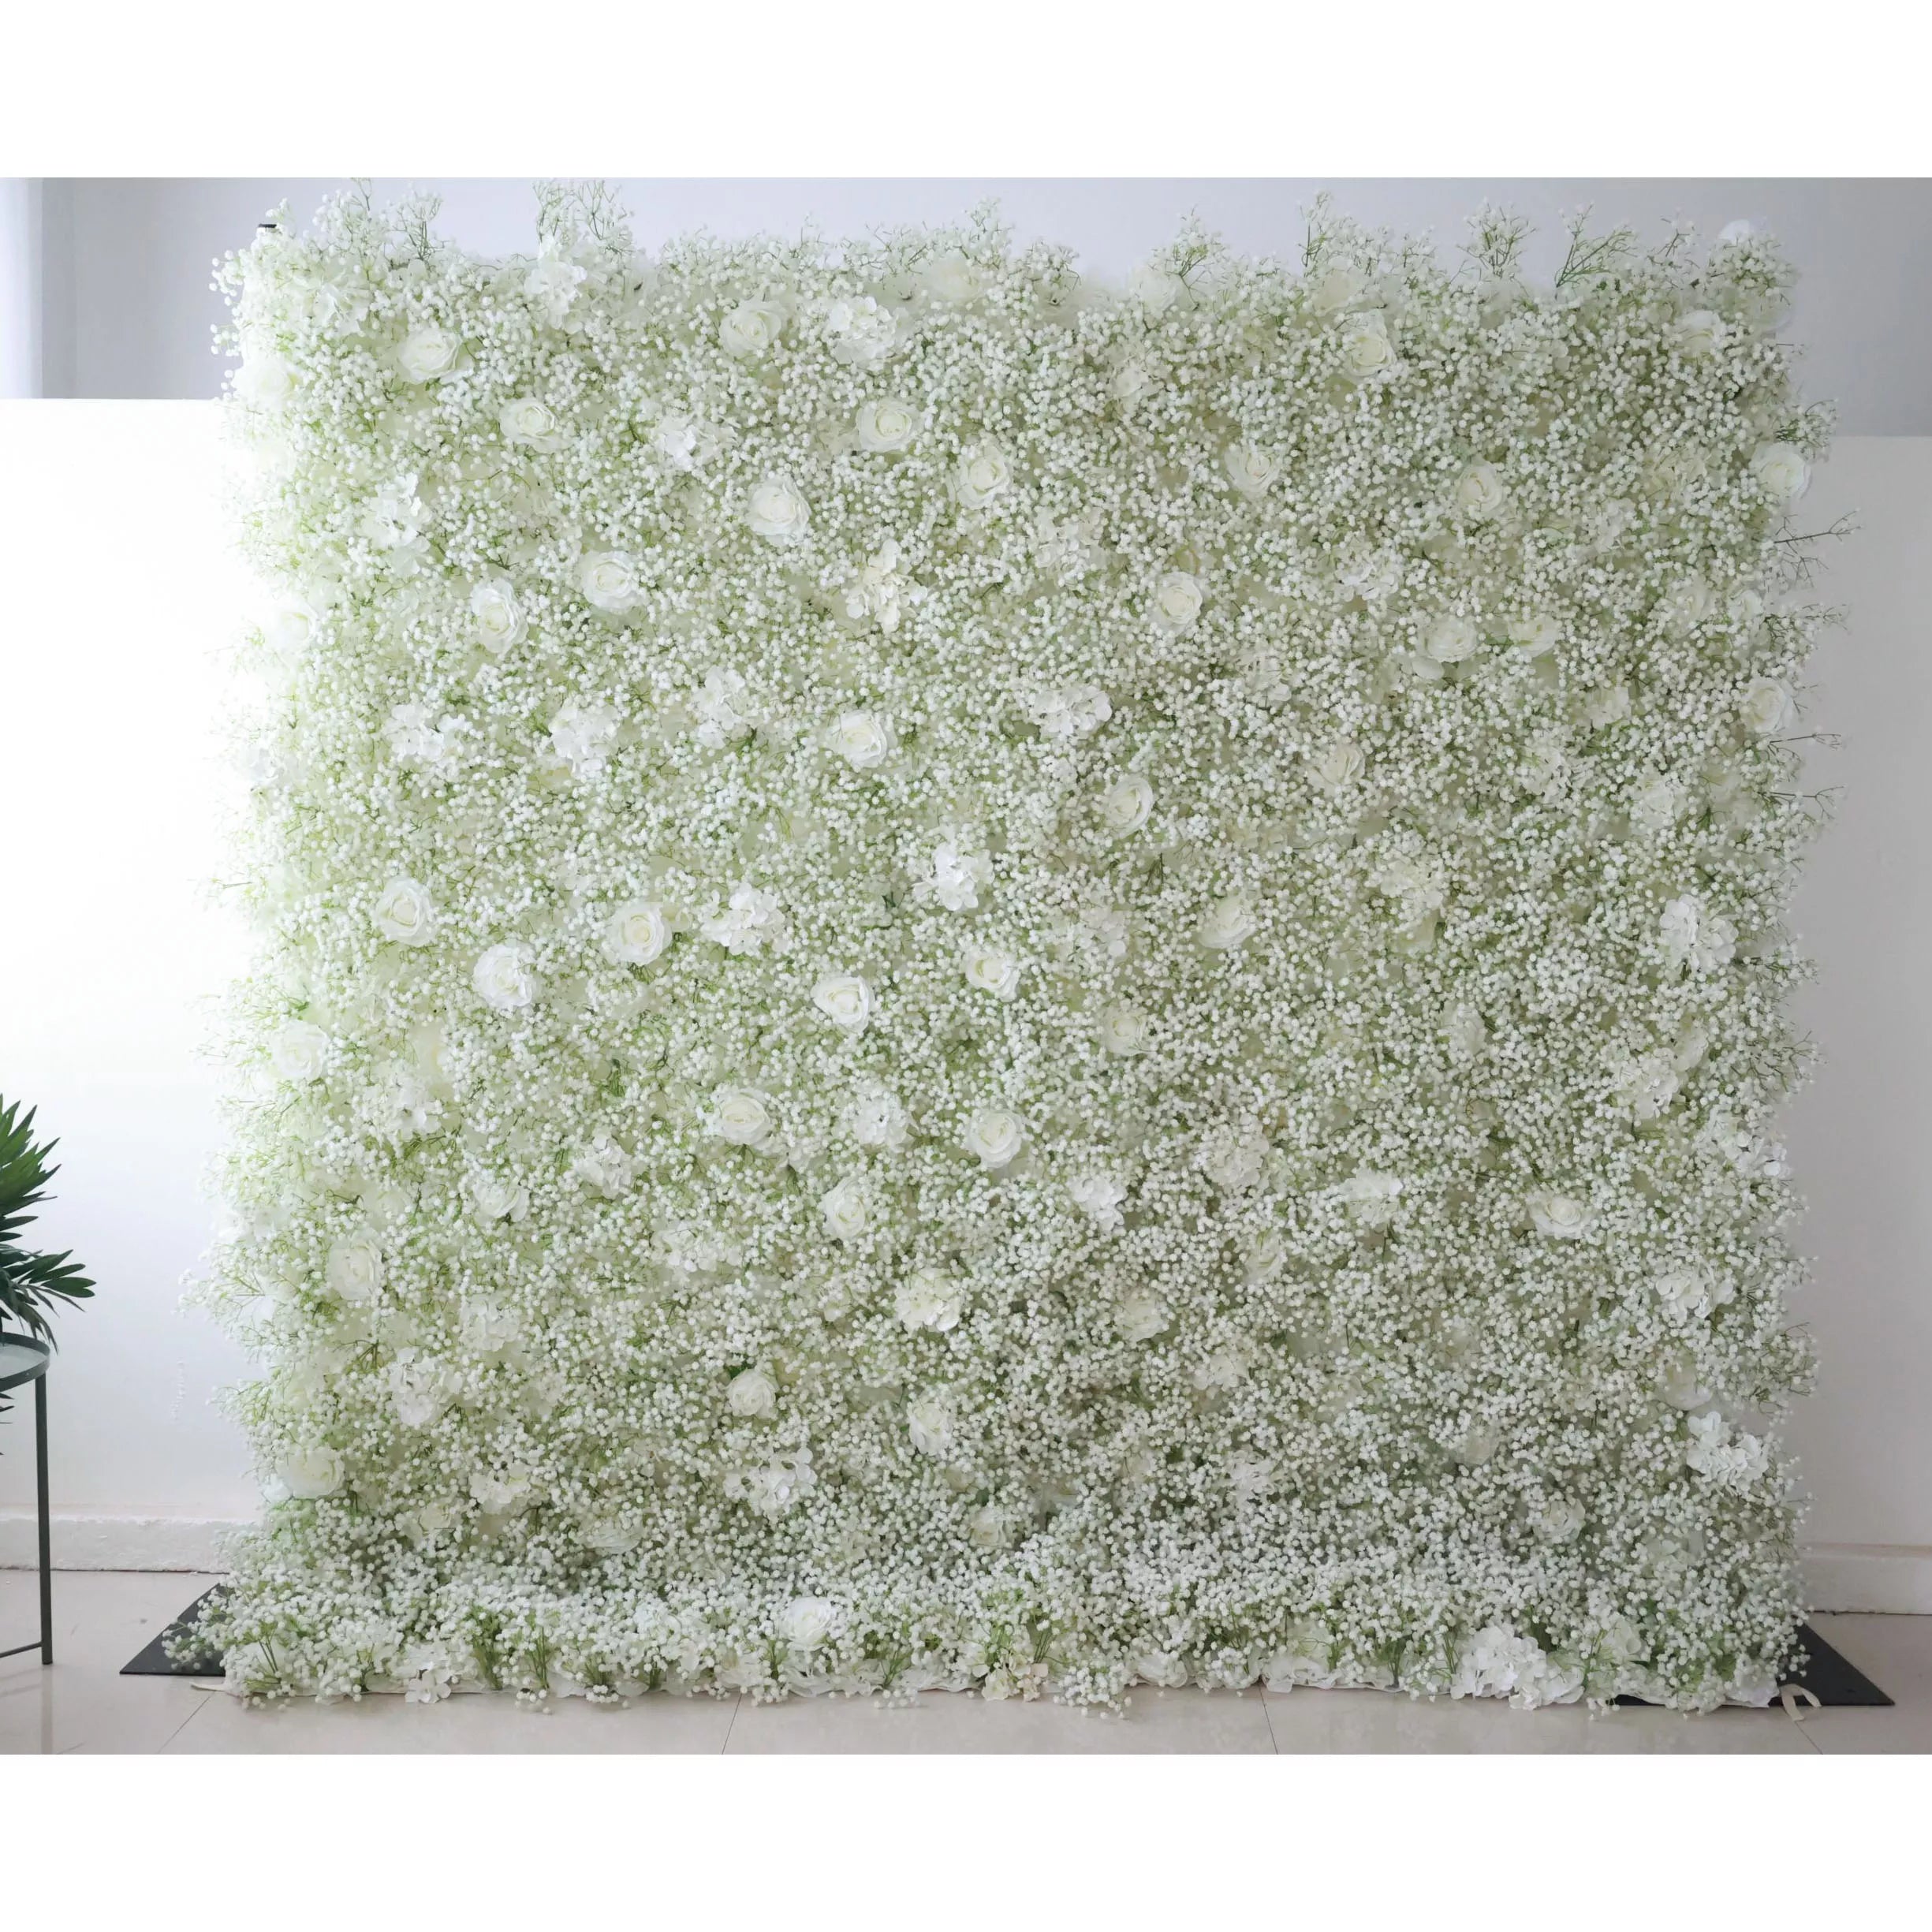 خلفية جدار زهور اصطناعية فالارر: خلفية جدارية زهور اصطناعية للحديقة الاليزية: أزهار زهرة بيضاء أثيري